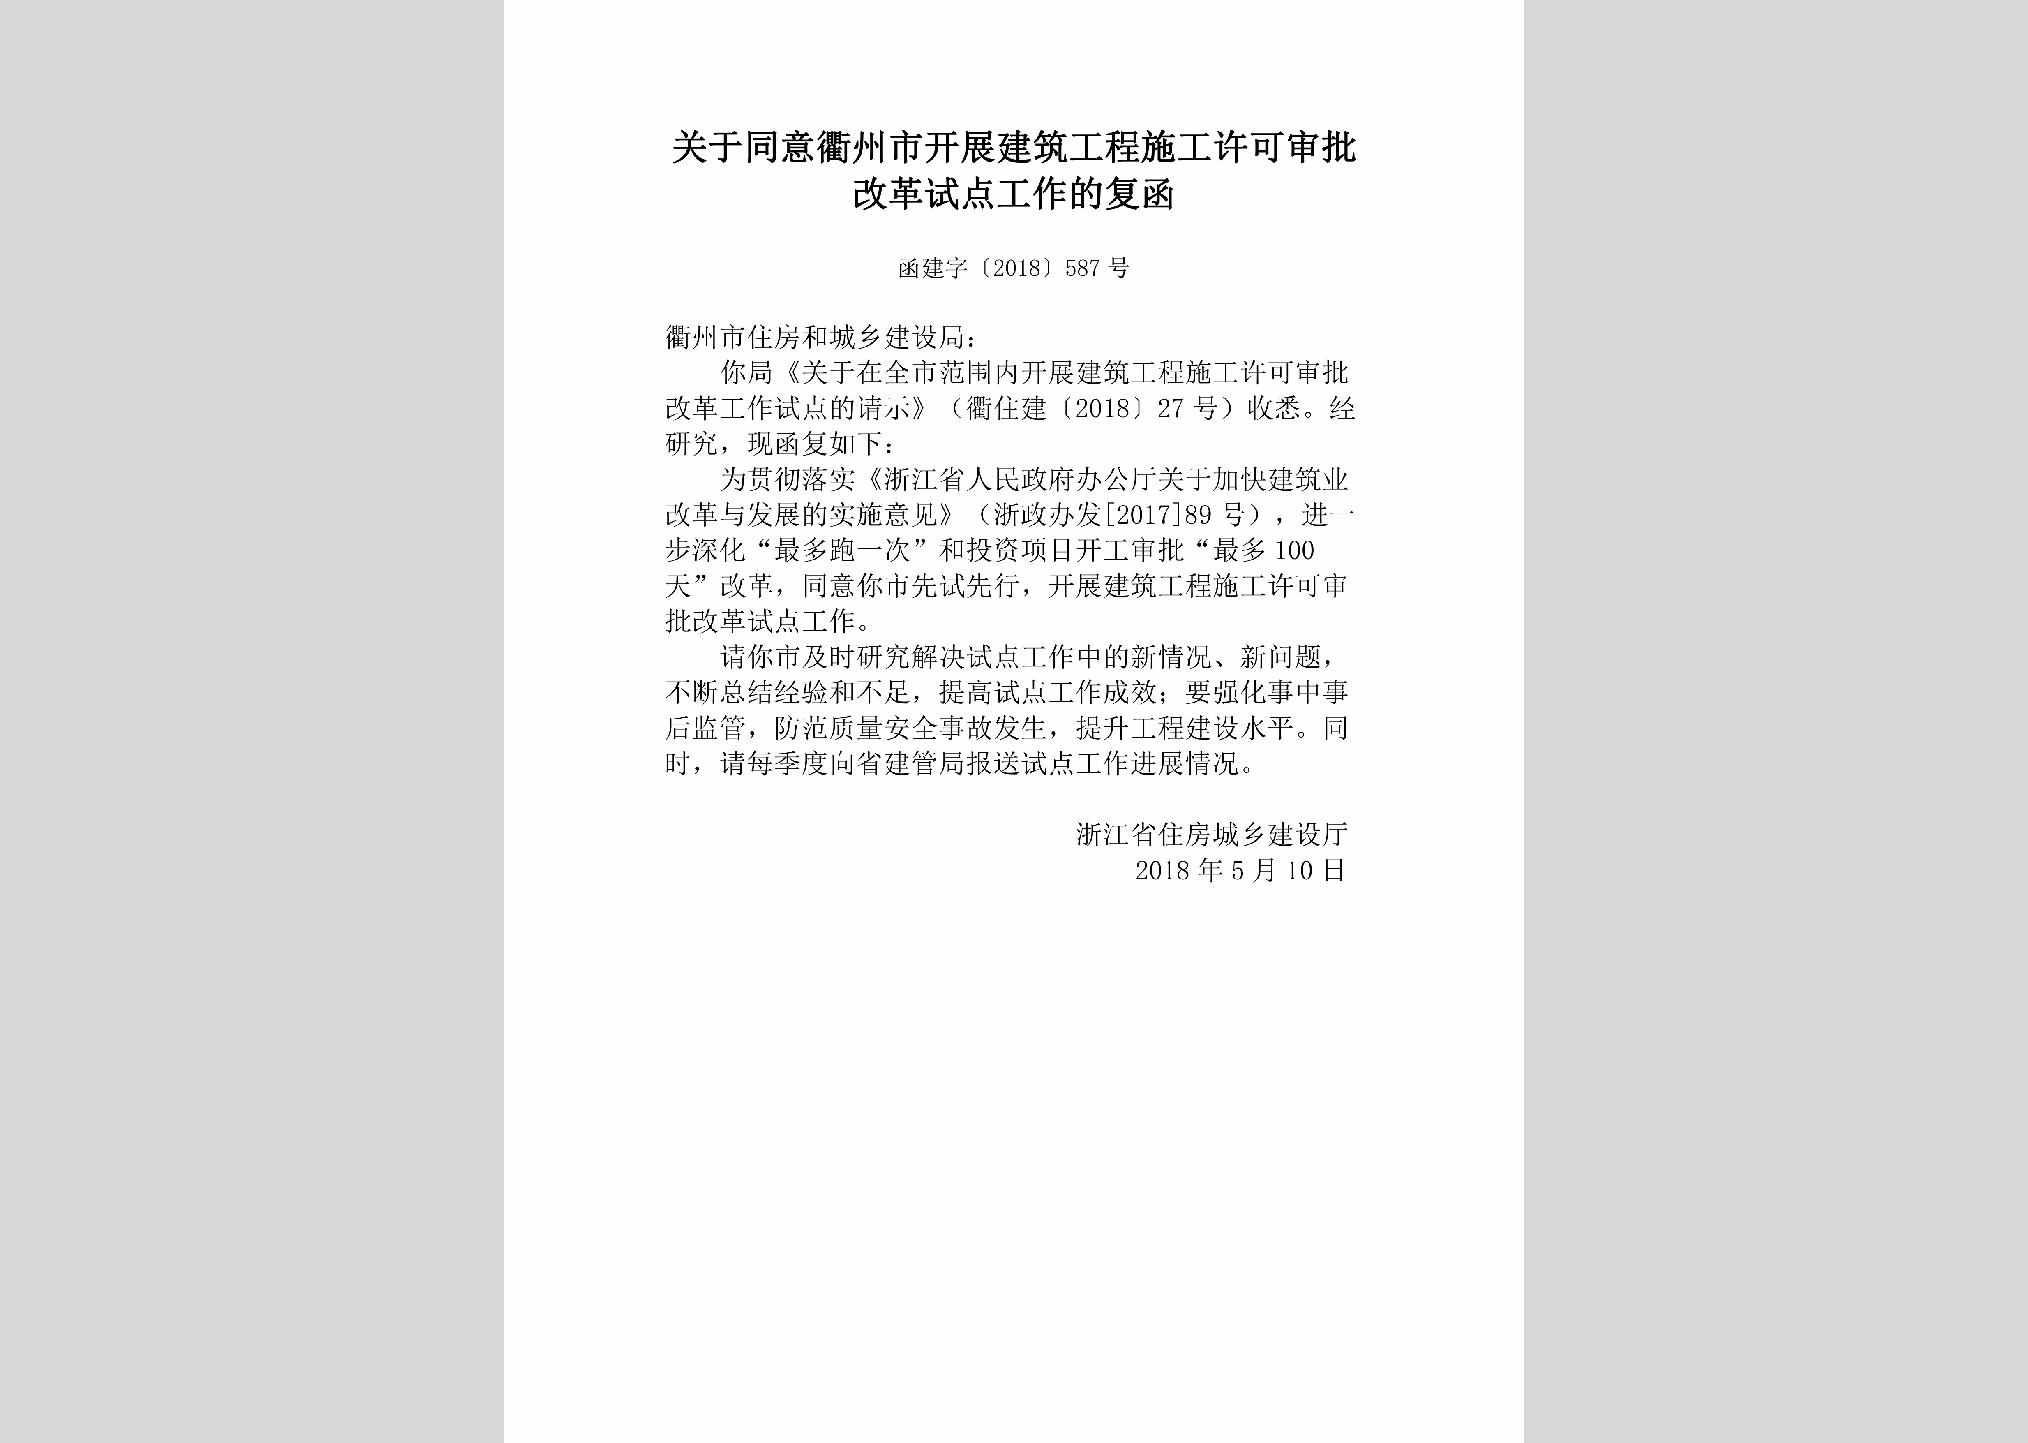 函建字[2018]587号：关于同意衢州市开展建筑工程施工许可审批改革试点工作的复函